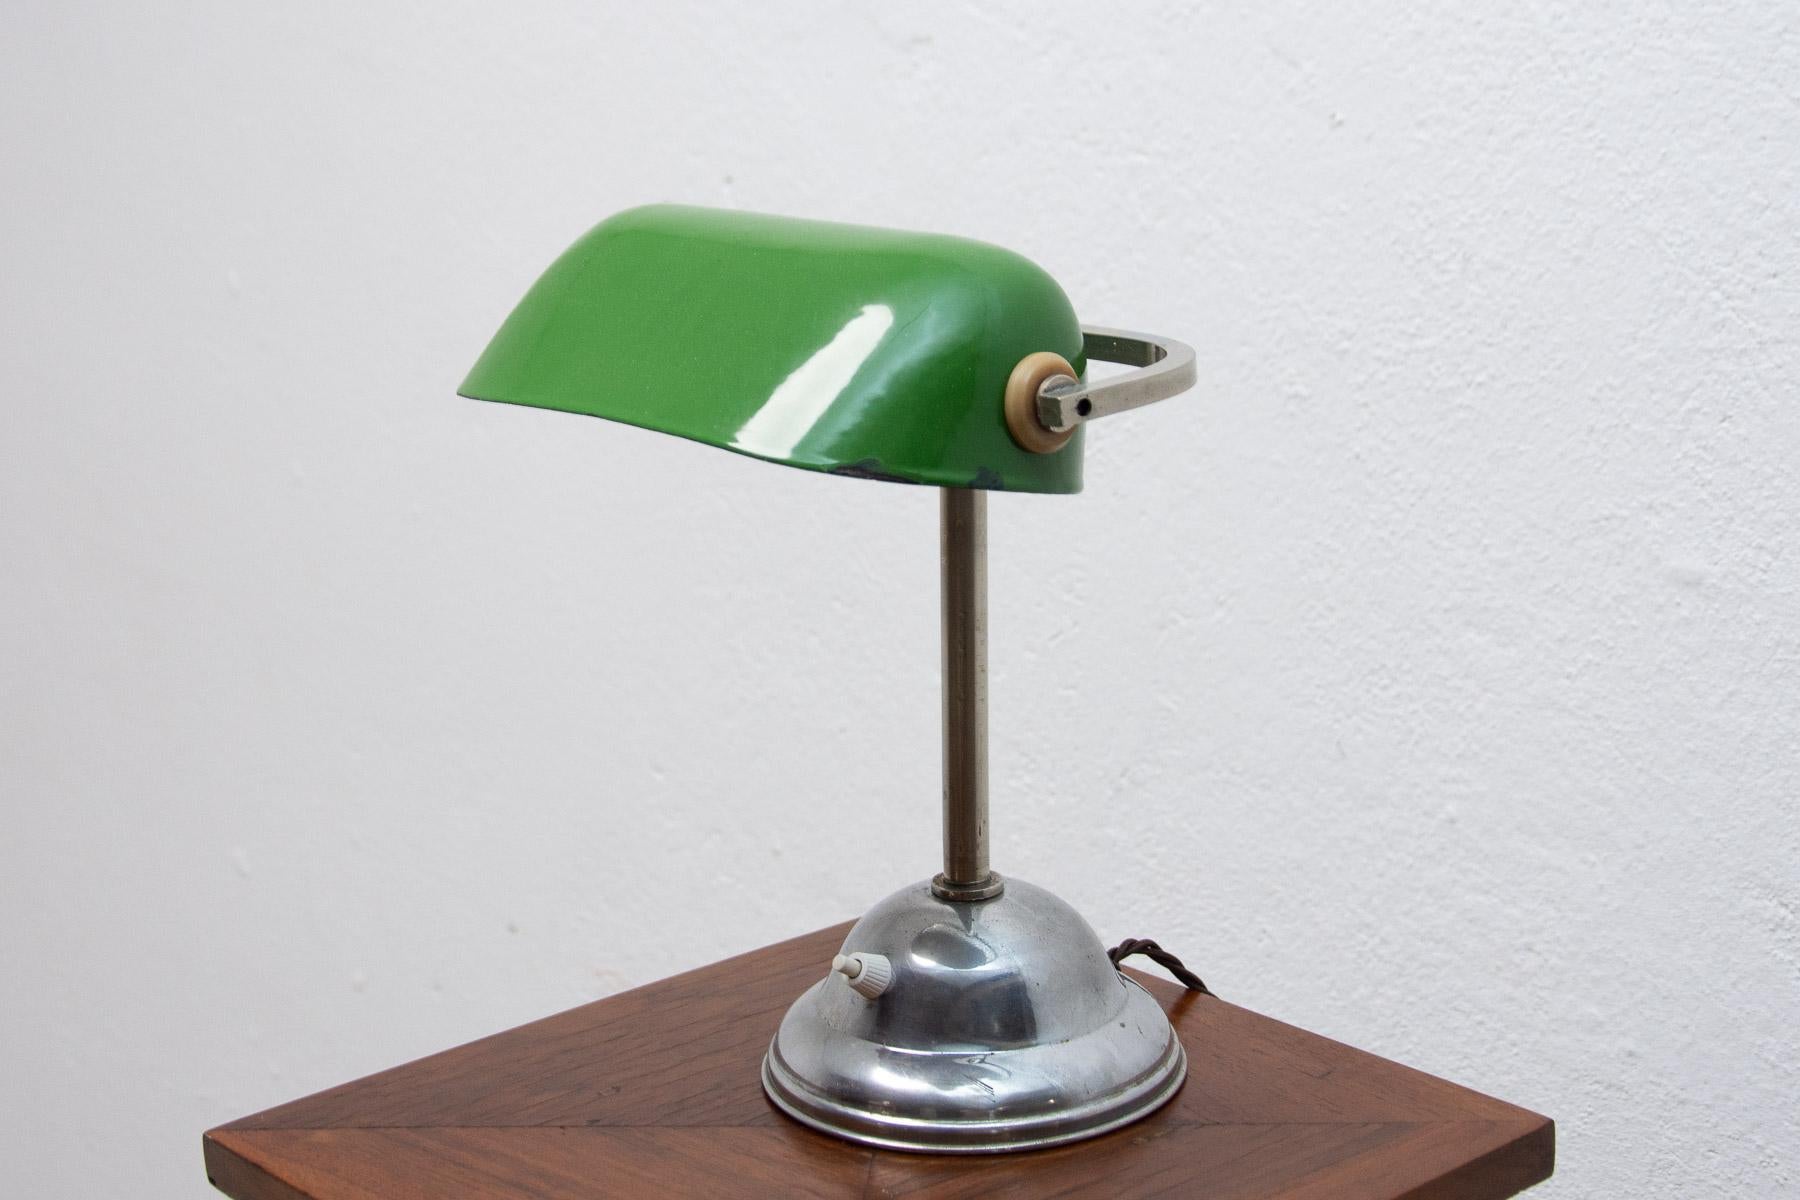 Lampe de bureau caractéristique, style Bauhaus, conçue en 1930. La lampe a une base chromée et un chapeau en métal émaillé. Le bras et le capuchon sont réglables. Entièrement réglable et d'un look fantastique qui s'adapte à de nombreux intérieurs.